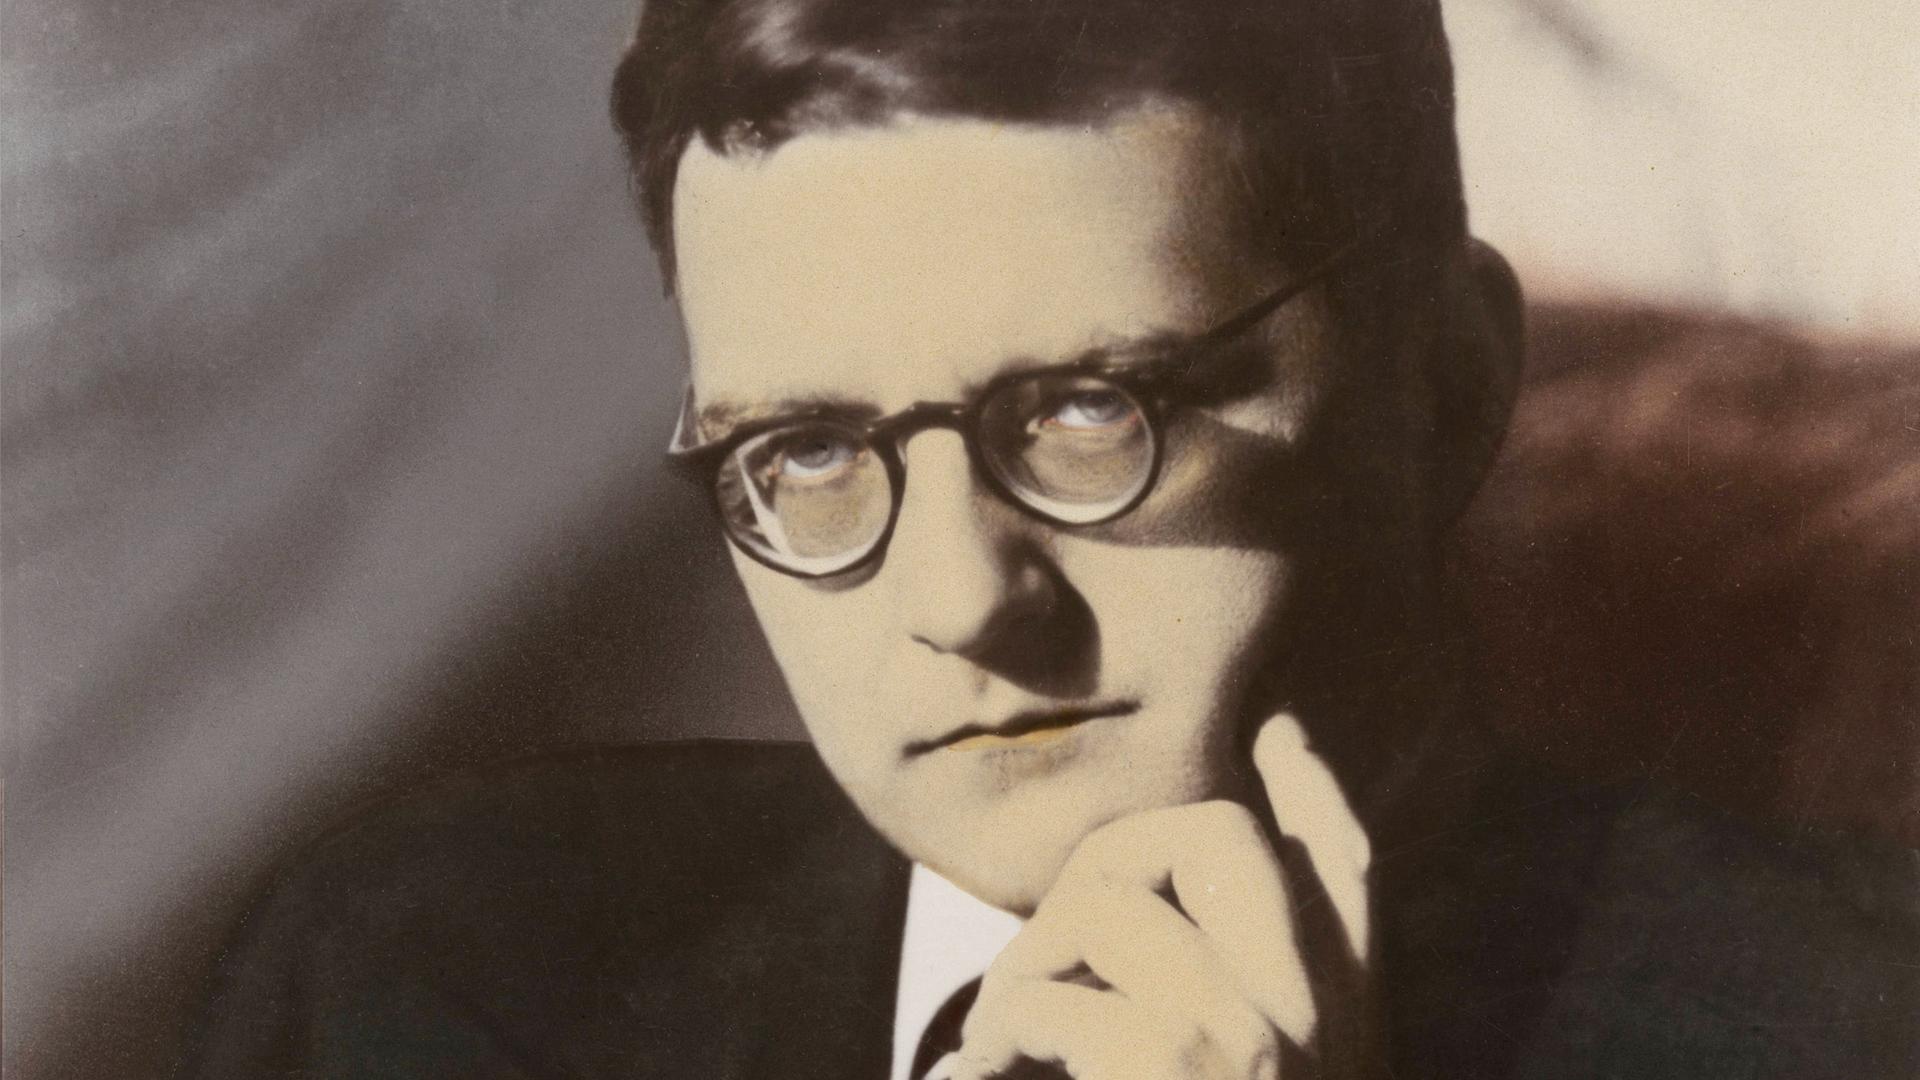 Dimitrij Schostakowitsch sitzt auf einer Fotografie von 1940 ernst schauend vor der Kamera und stützt sein Kinn in seine linke Hand.